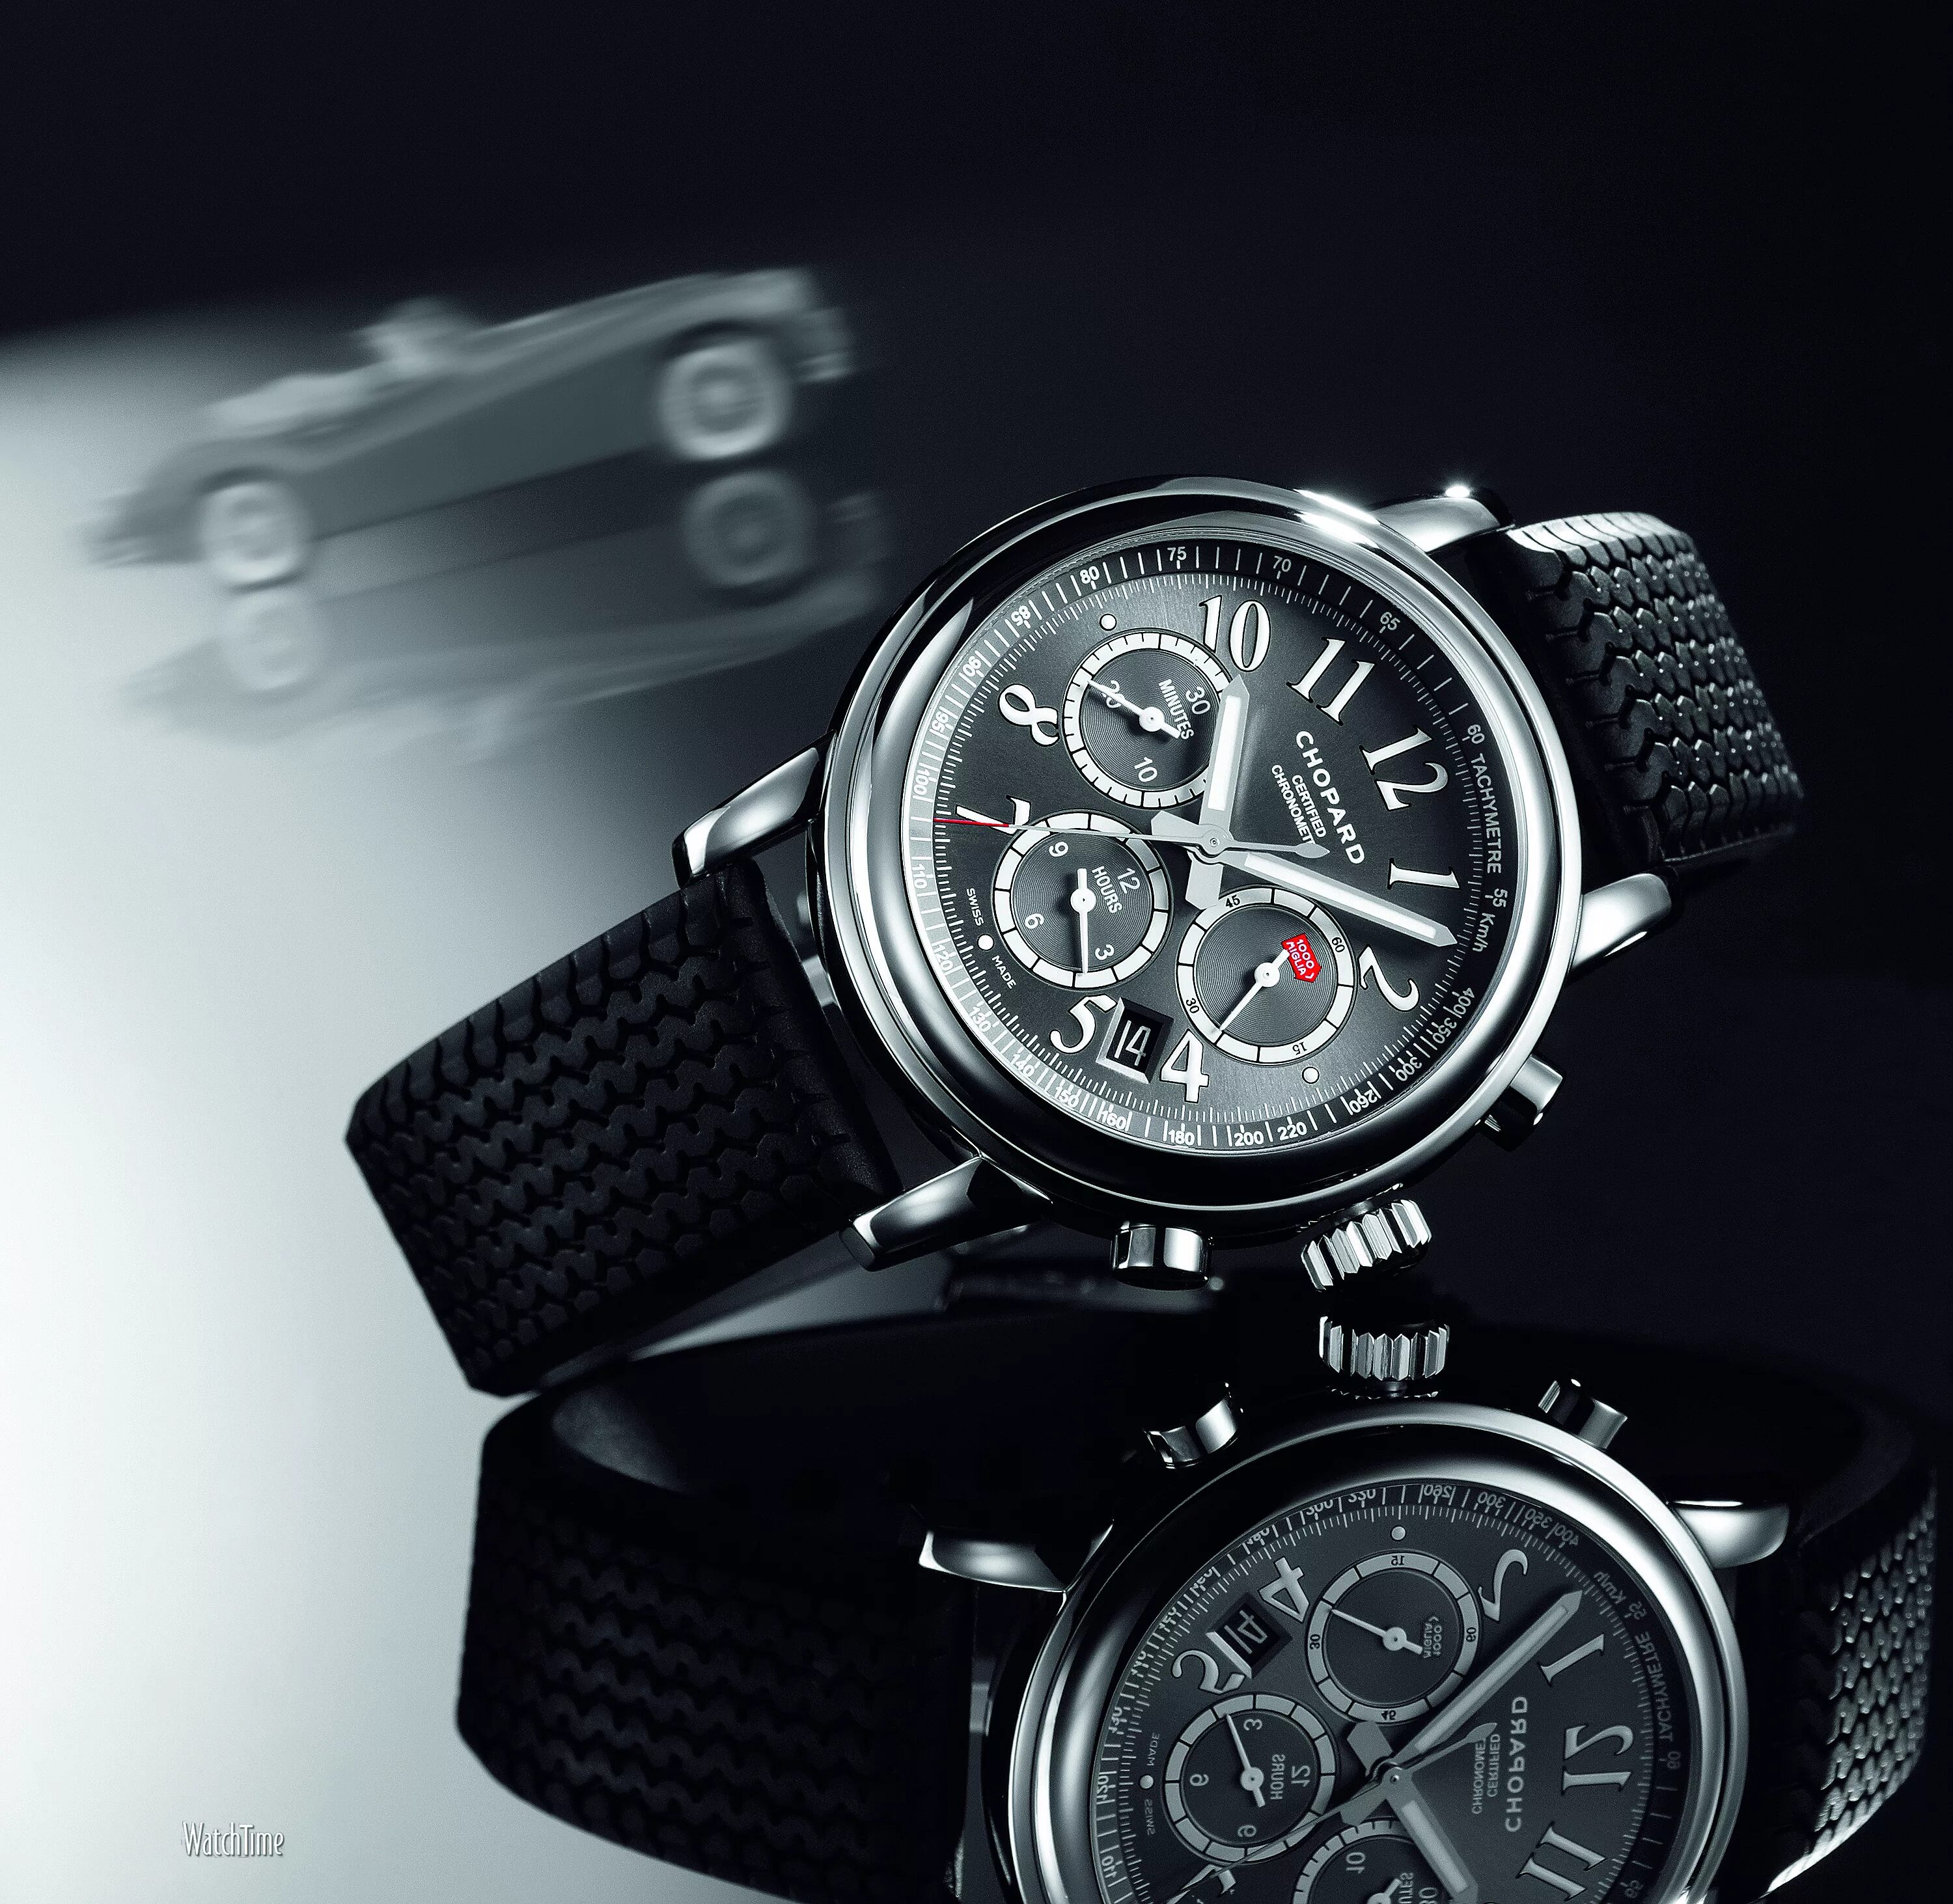 Watches website. Chopard Mille Miglia gt XL. Часы Chopard 1000 Miglia. Оценить швейцарские часы. Обои на часы.